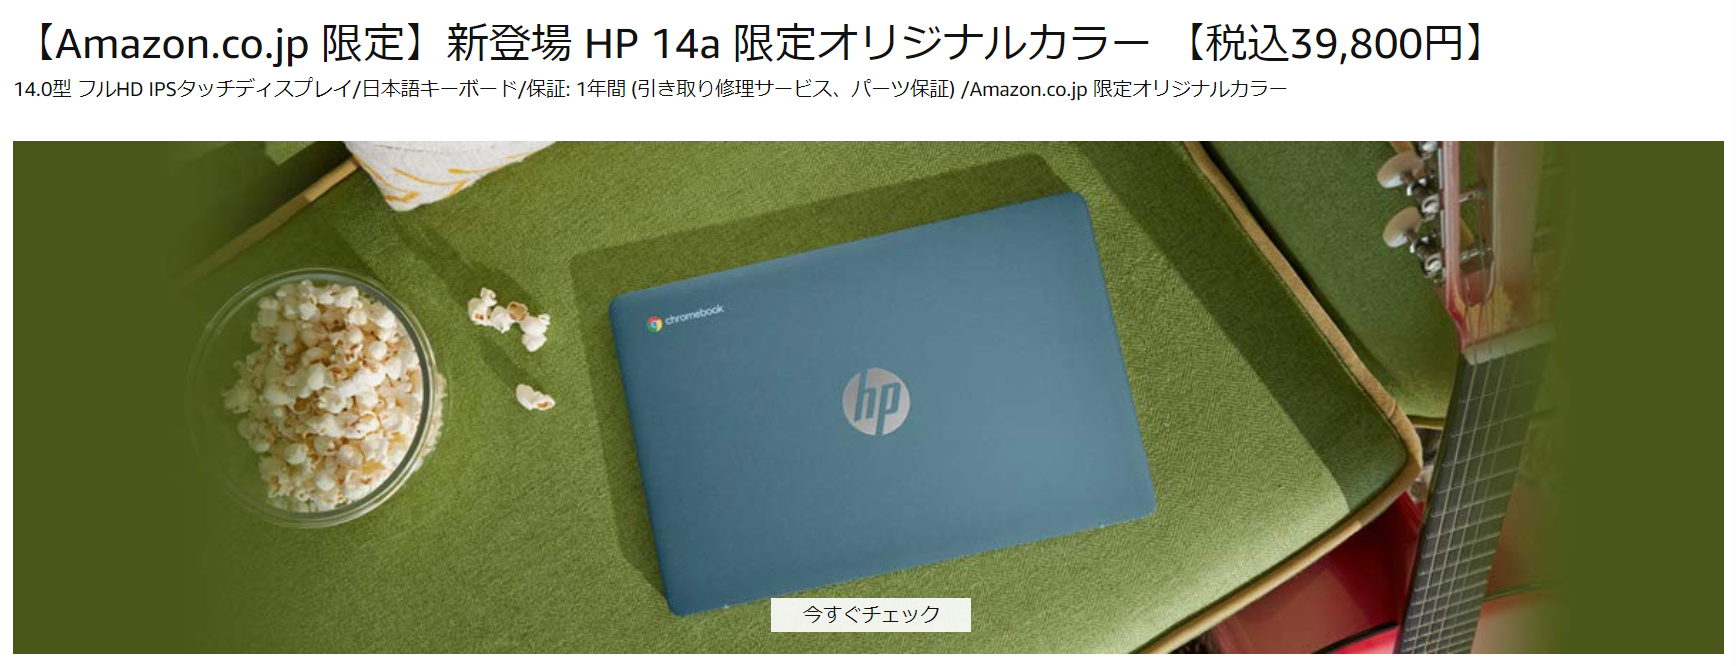 かぶ] HP Chromebook 14a（Amazon限定モデル）レビュー。2020年のスタンダード14インチ 。「自分に何が必要で何が不要か」を見極められる指標的良モデル。[PR]